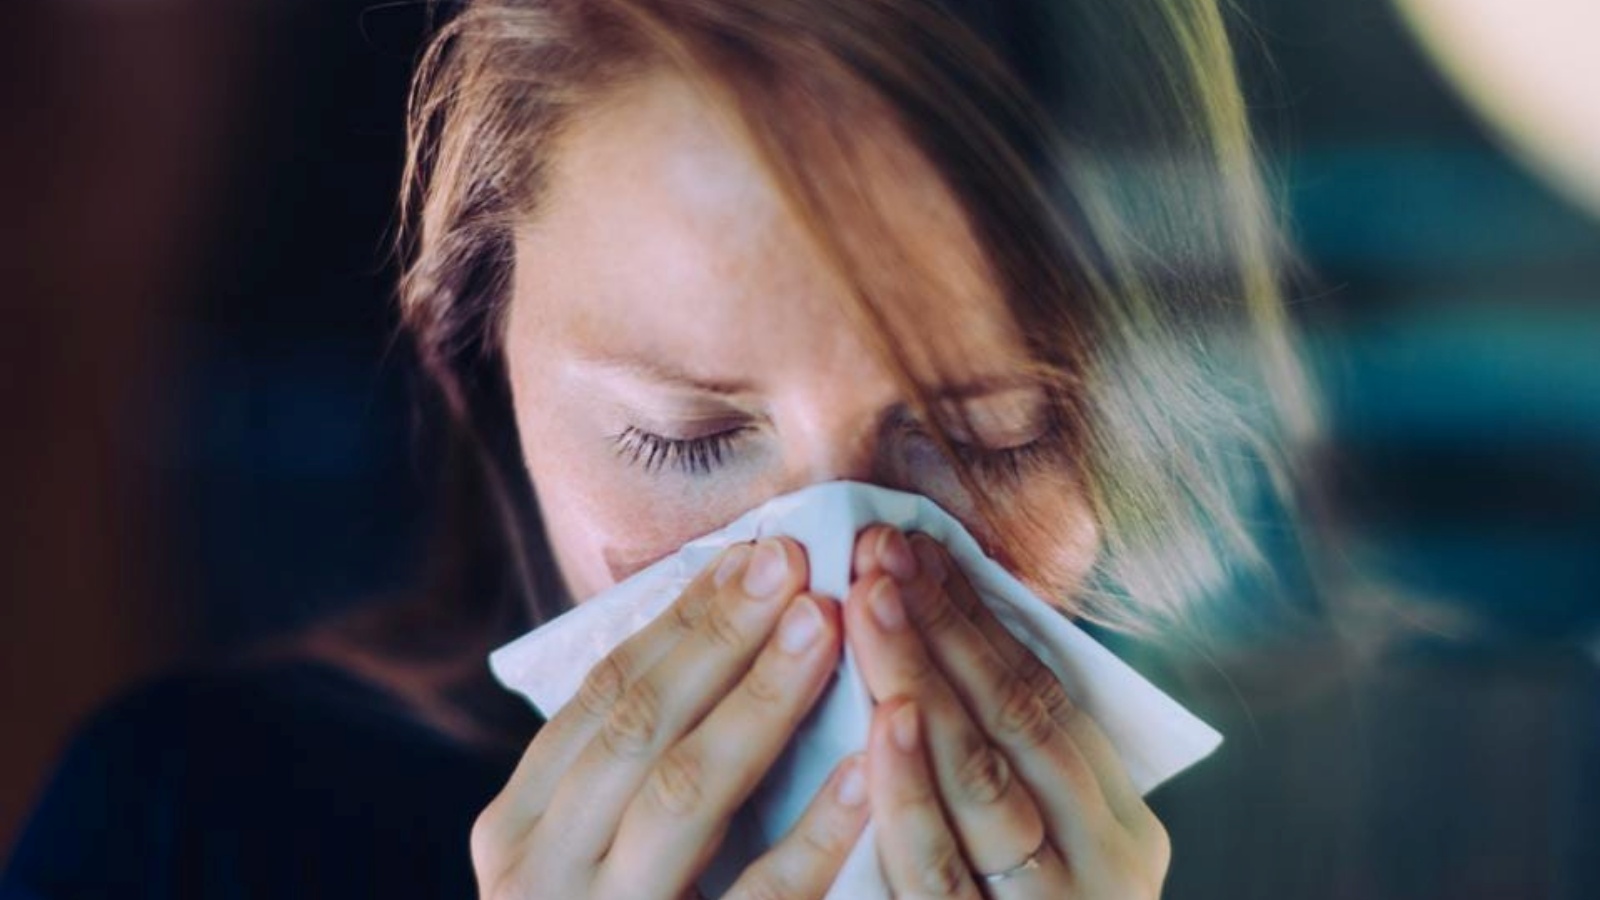 إصابات نزلات البرد والإنفلونزا تزداد في الشتاء